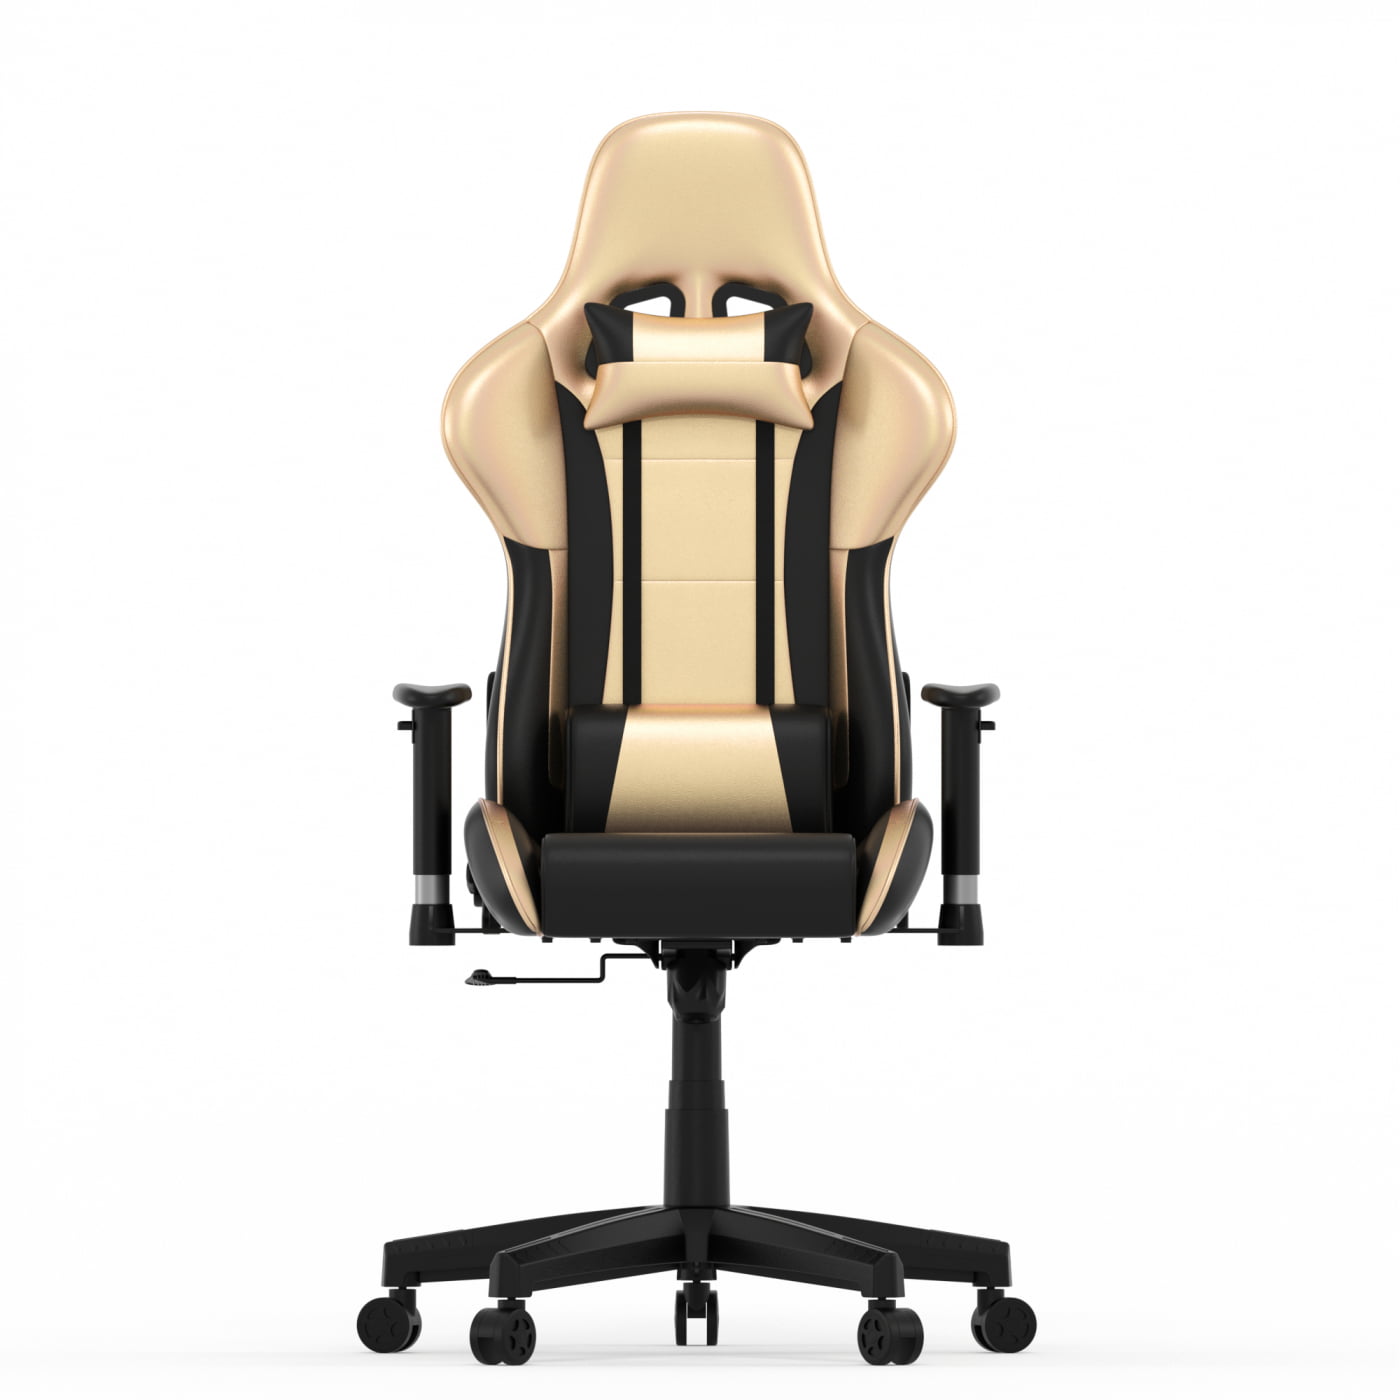 Populair klein Afrika Gamestoel GoldGamer deluxe - bureaustoel - racing gaming stoel - zwart goud  - Meubel Plein